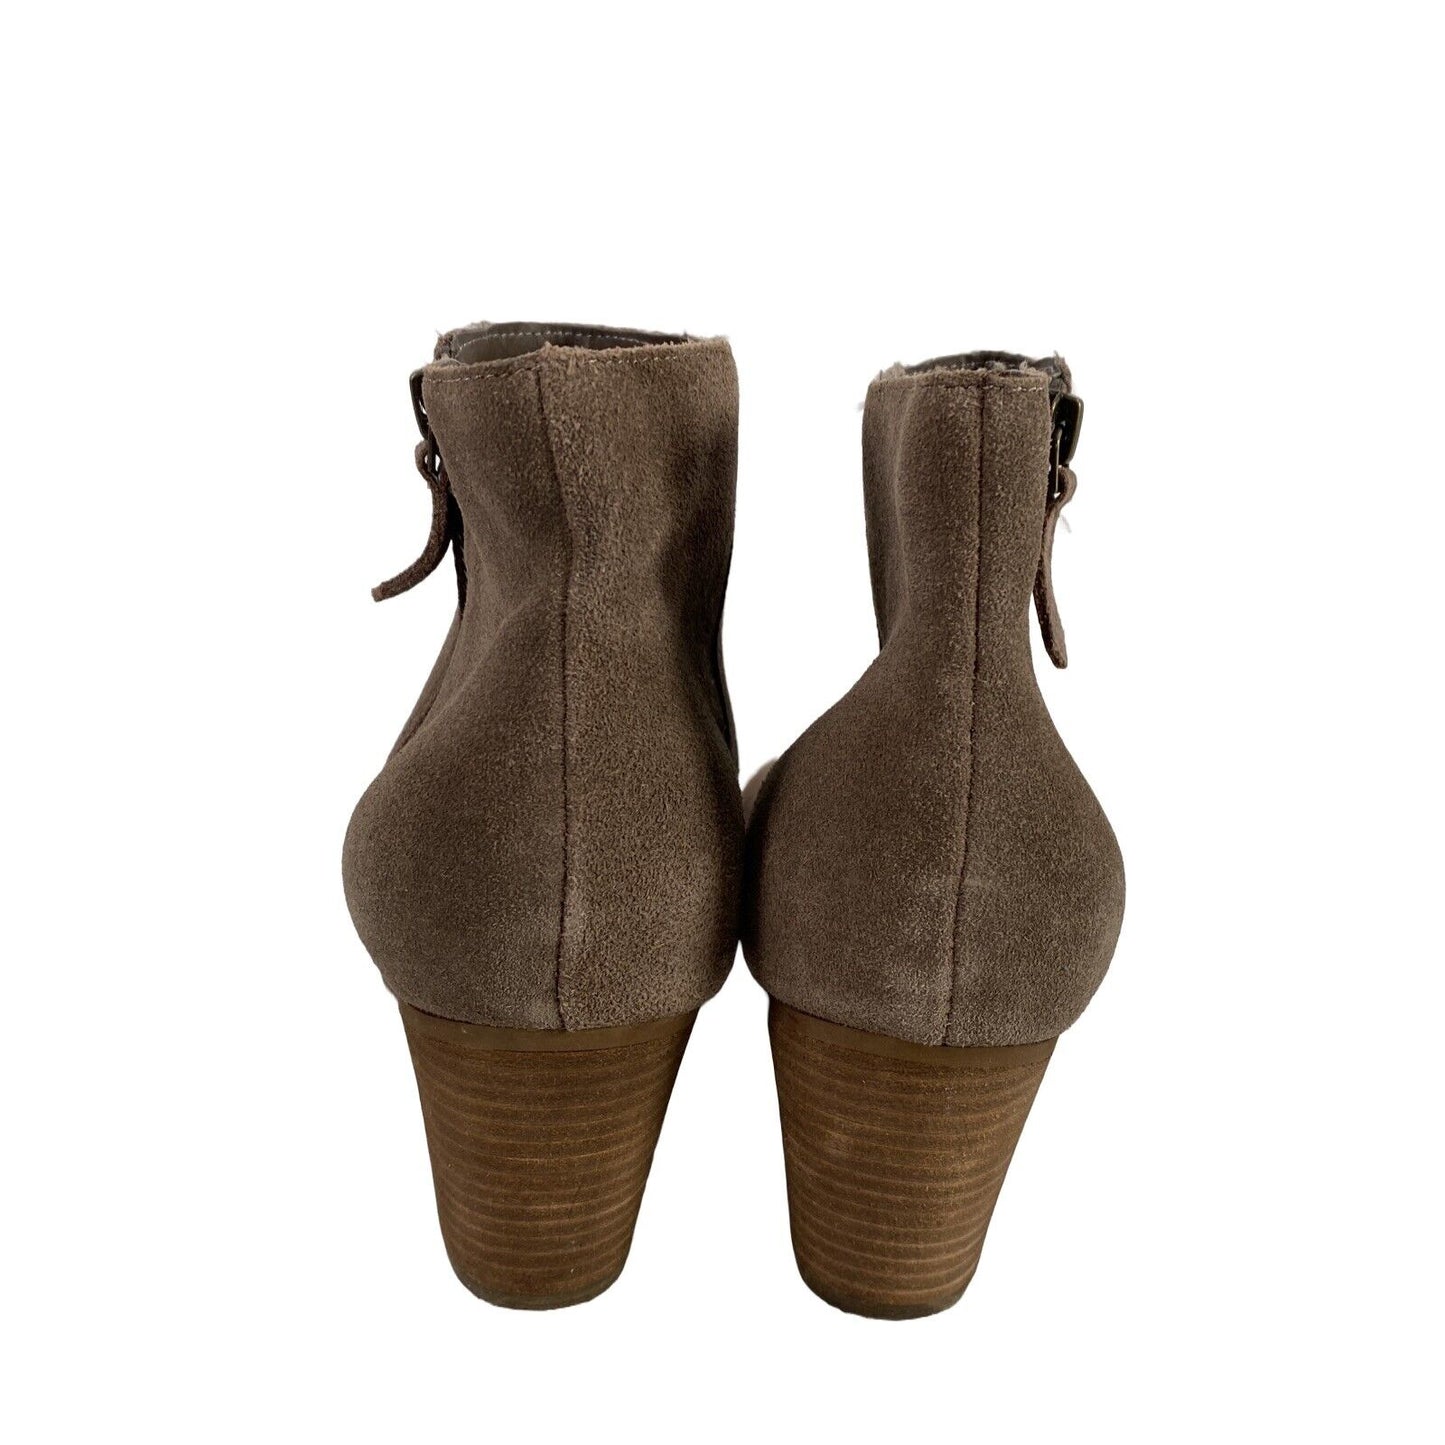 Crown Vintage Women's Brown Genuine Suede Block Heel Booties - 9.5 M